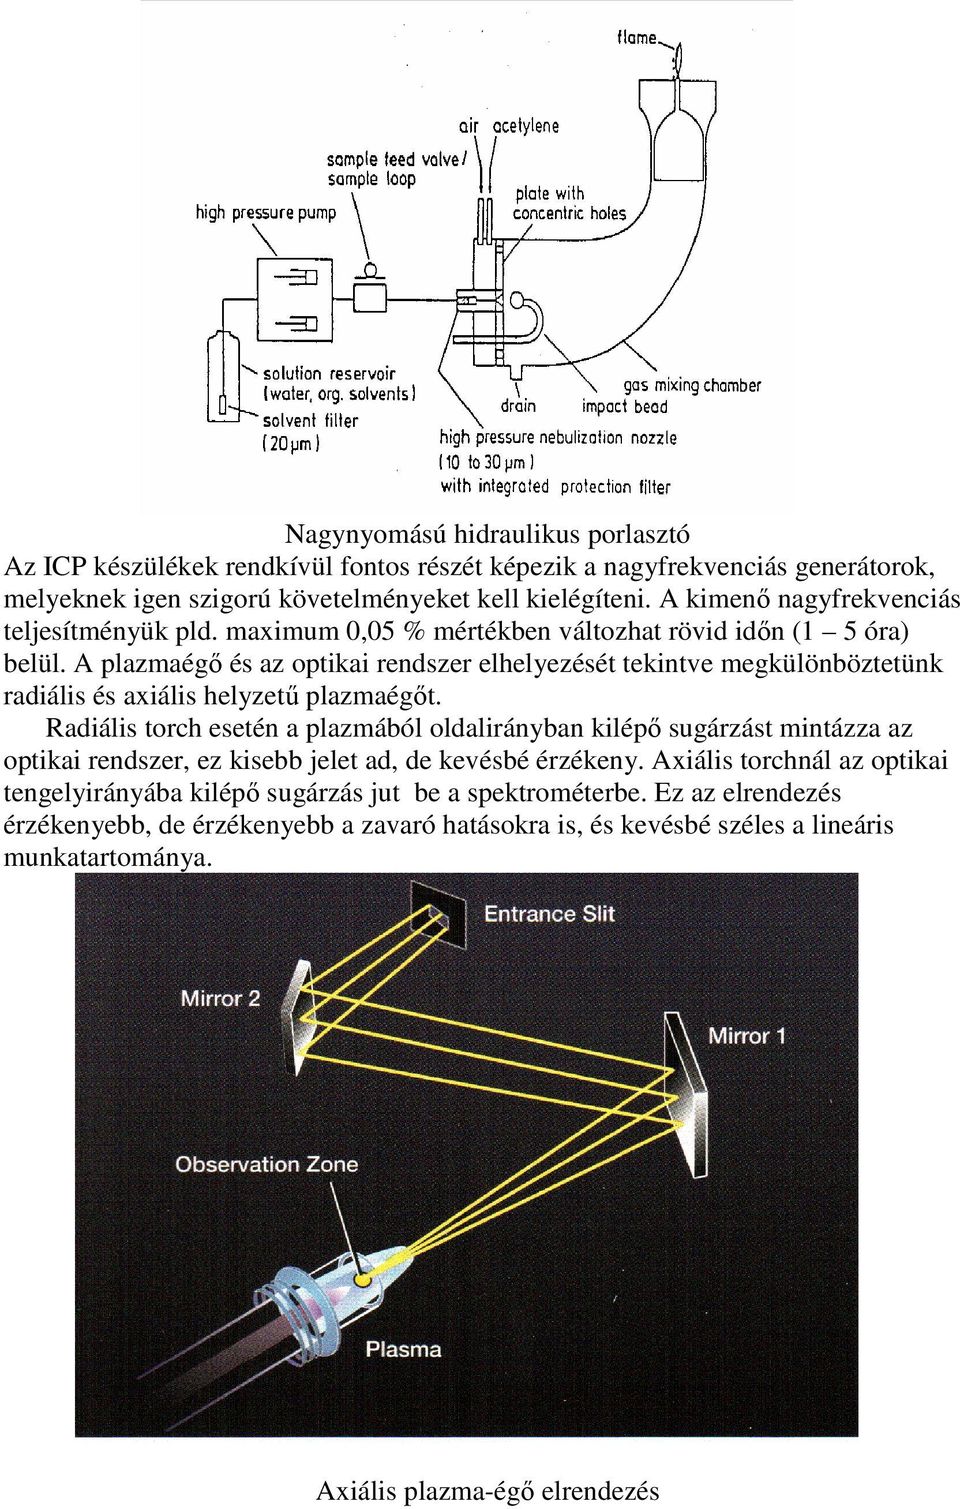 A plazmaégı és az optikai rendszer elhelyezését tekintve megkülönböztetünk radiális és axiális helyzető plazmaégıt.